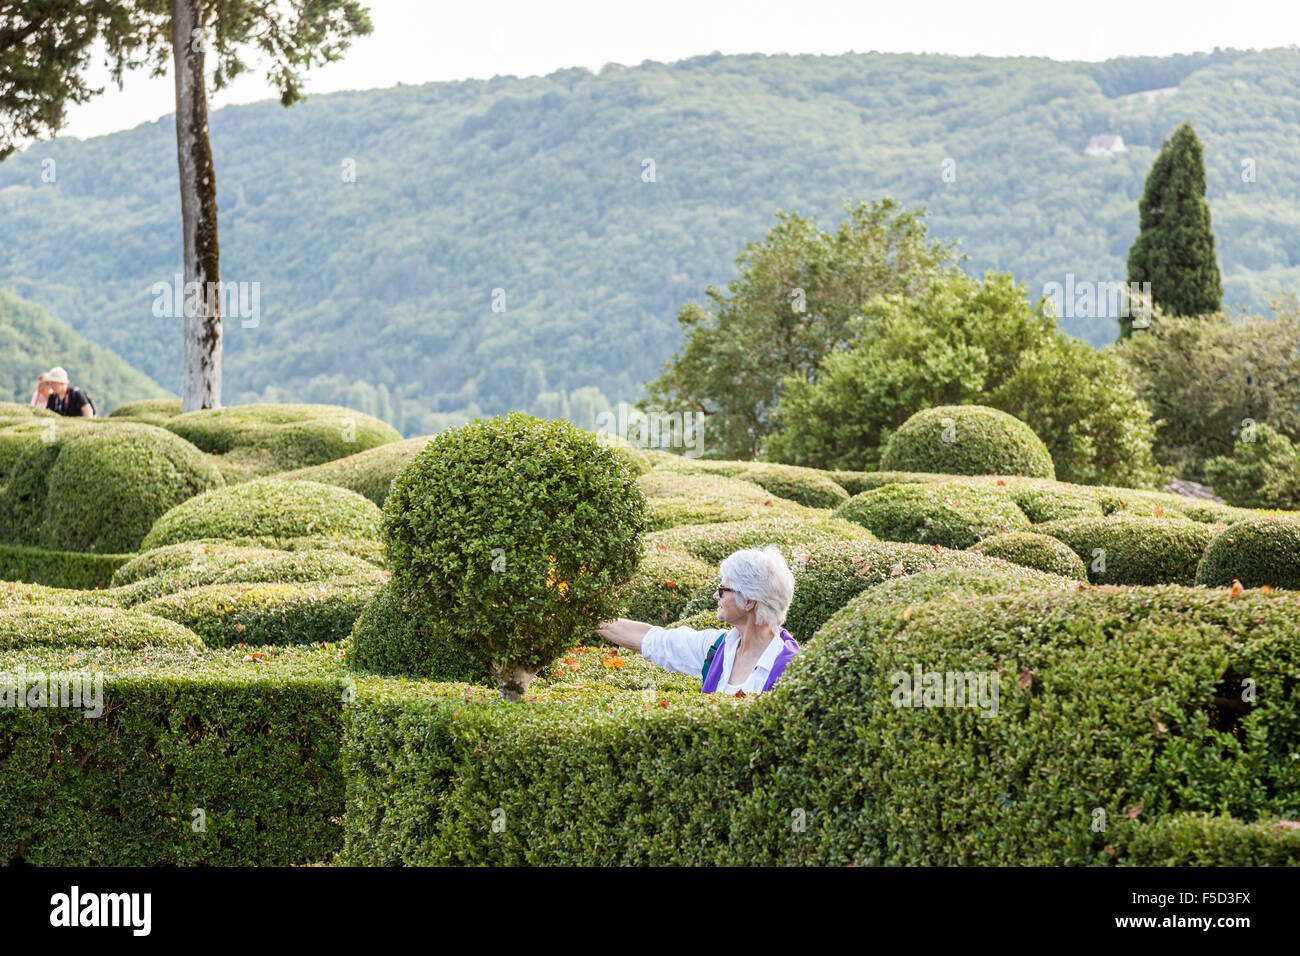 Un touriste senior dans les jardins suspendus de Marqueyssac (Périgord - France). Tour du troisième âge dans les jardins suspendus de Marqueyssac. Banque D'Images